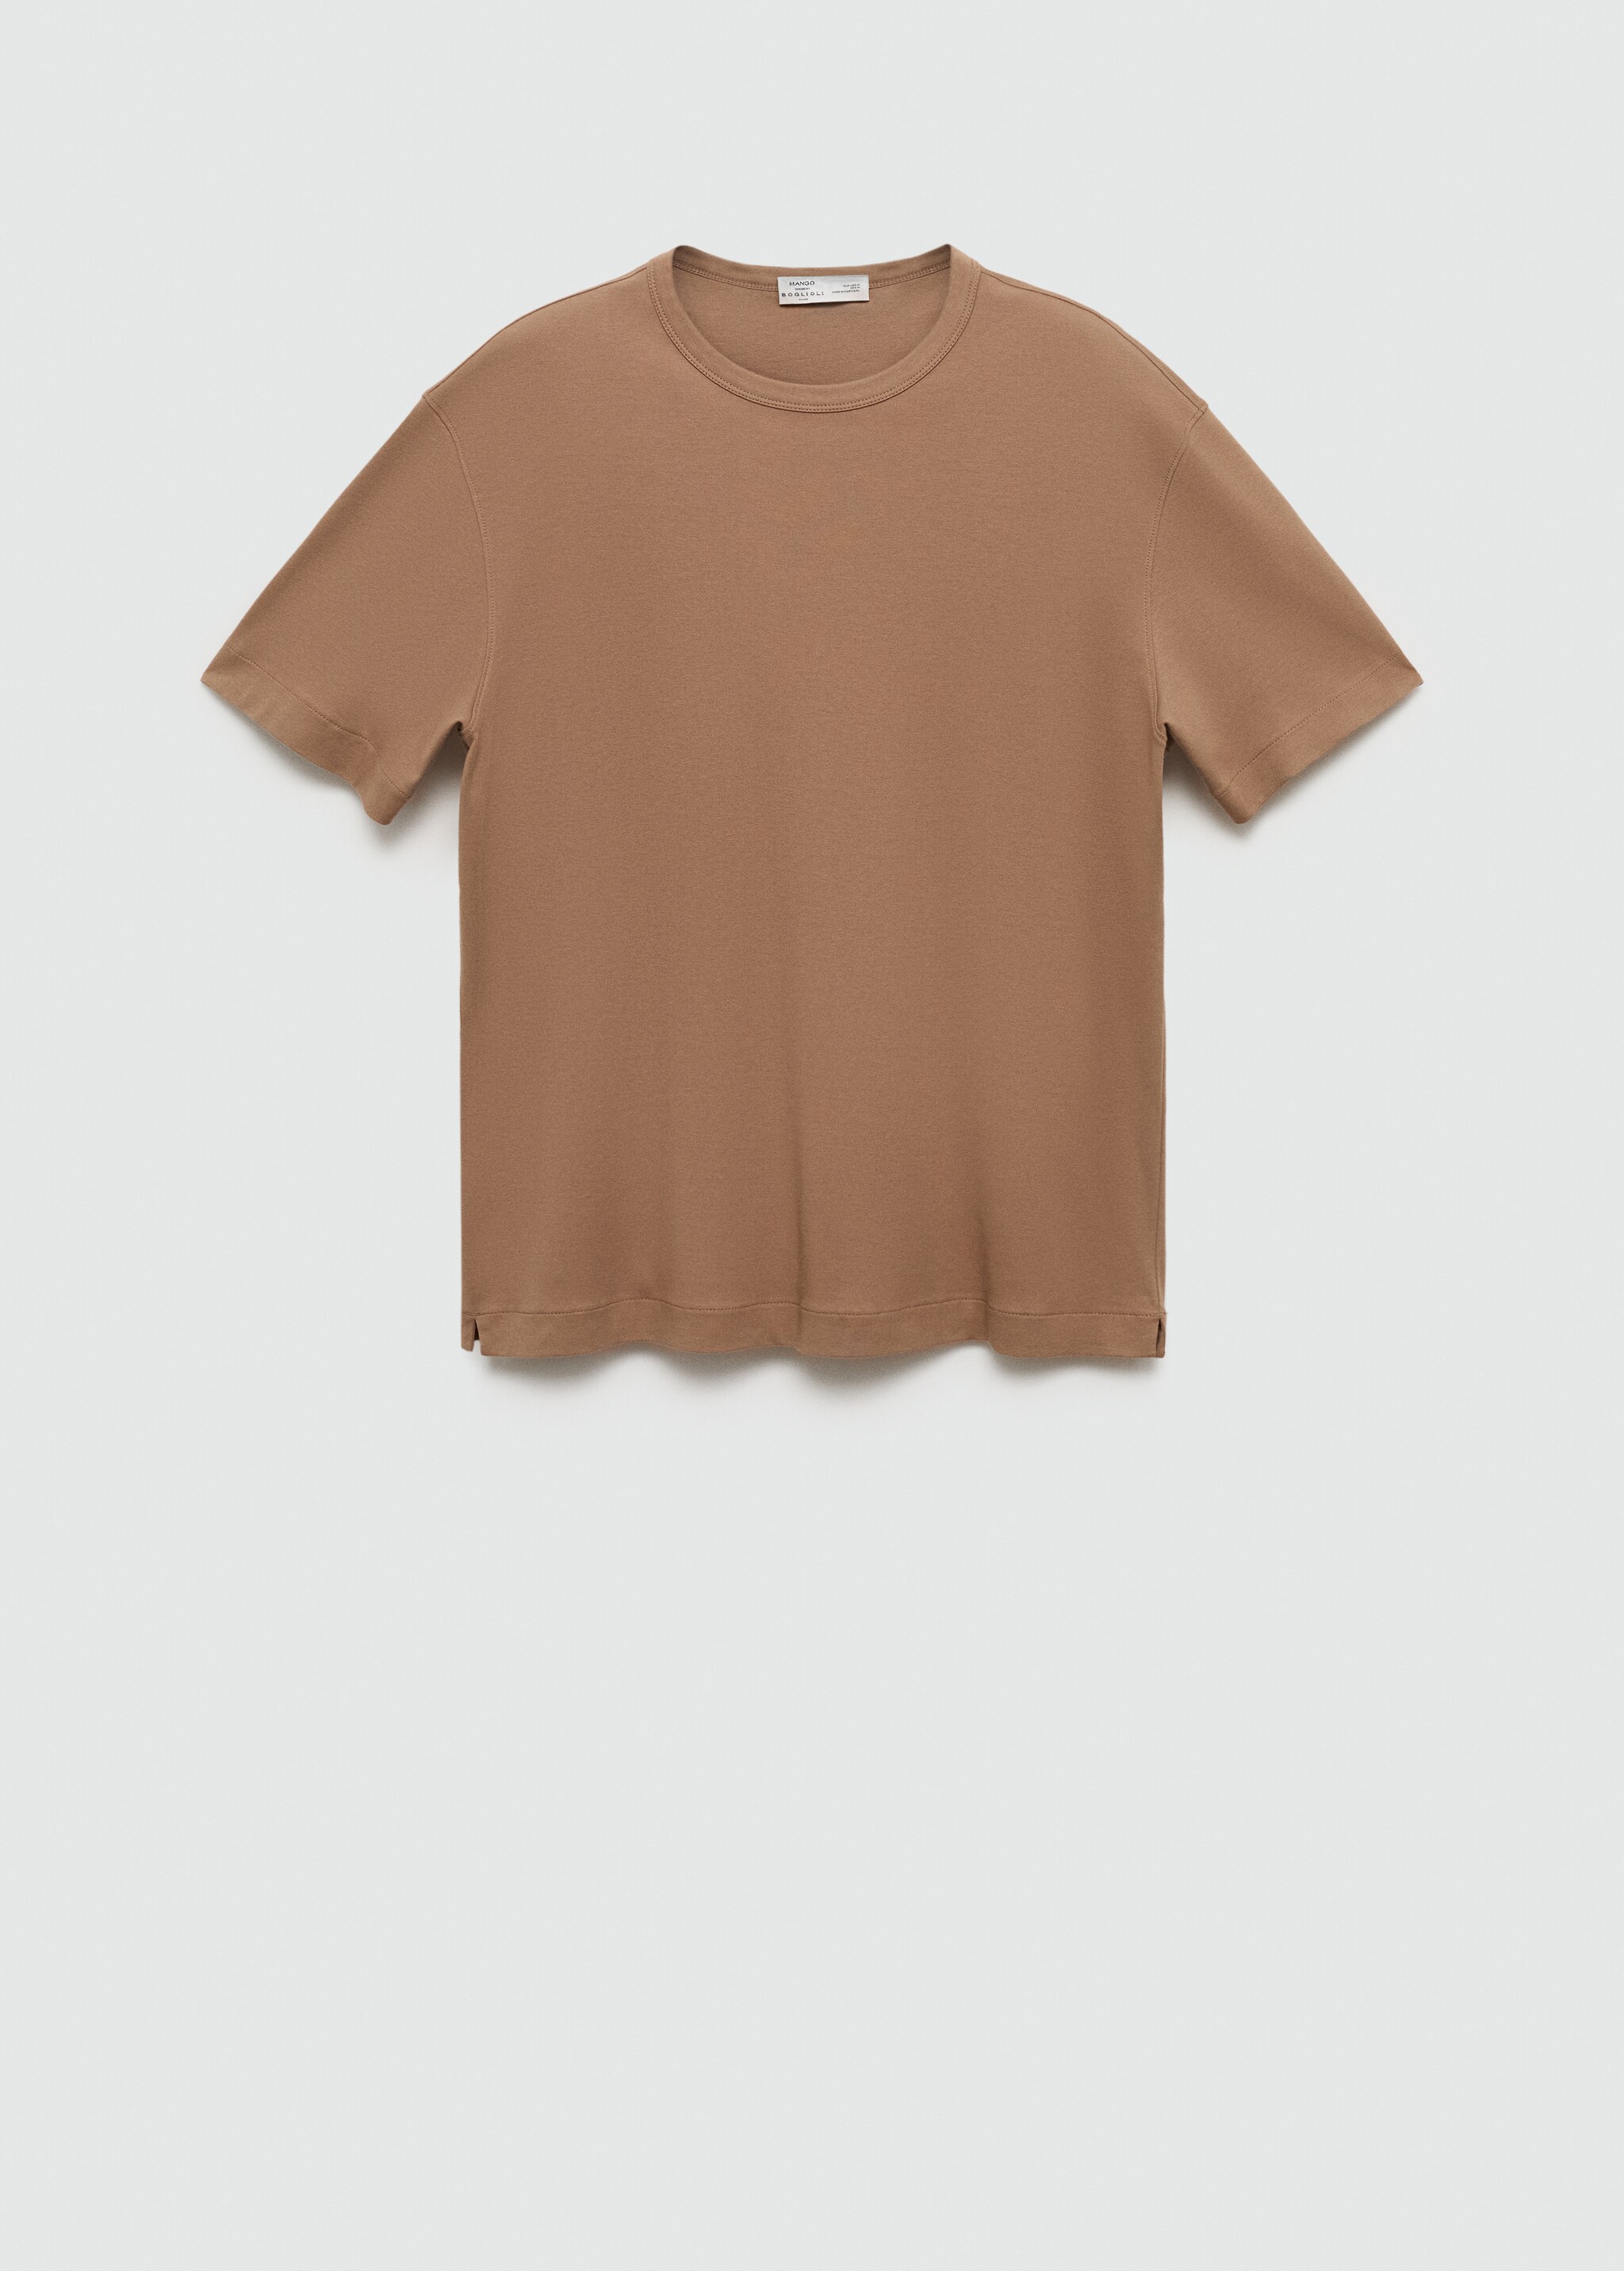 Camiseta slim fit 100% algodón - Artículo sin modelo